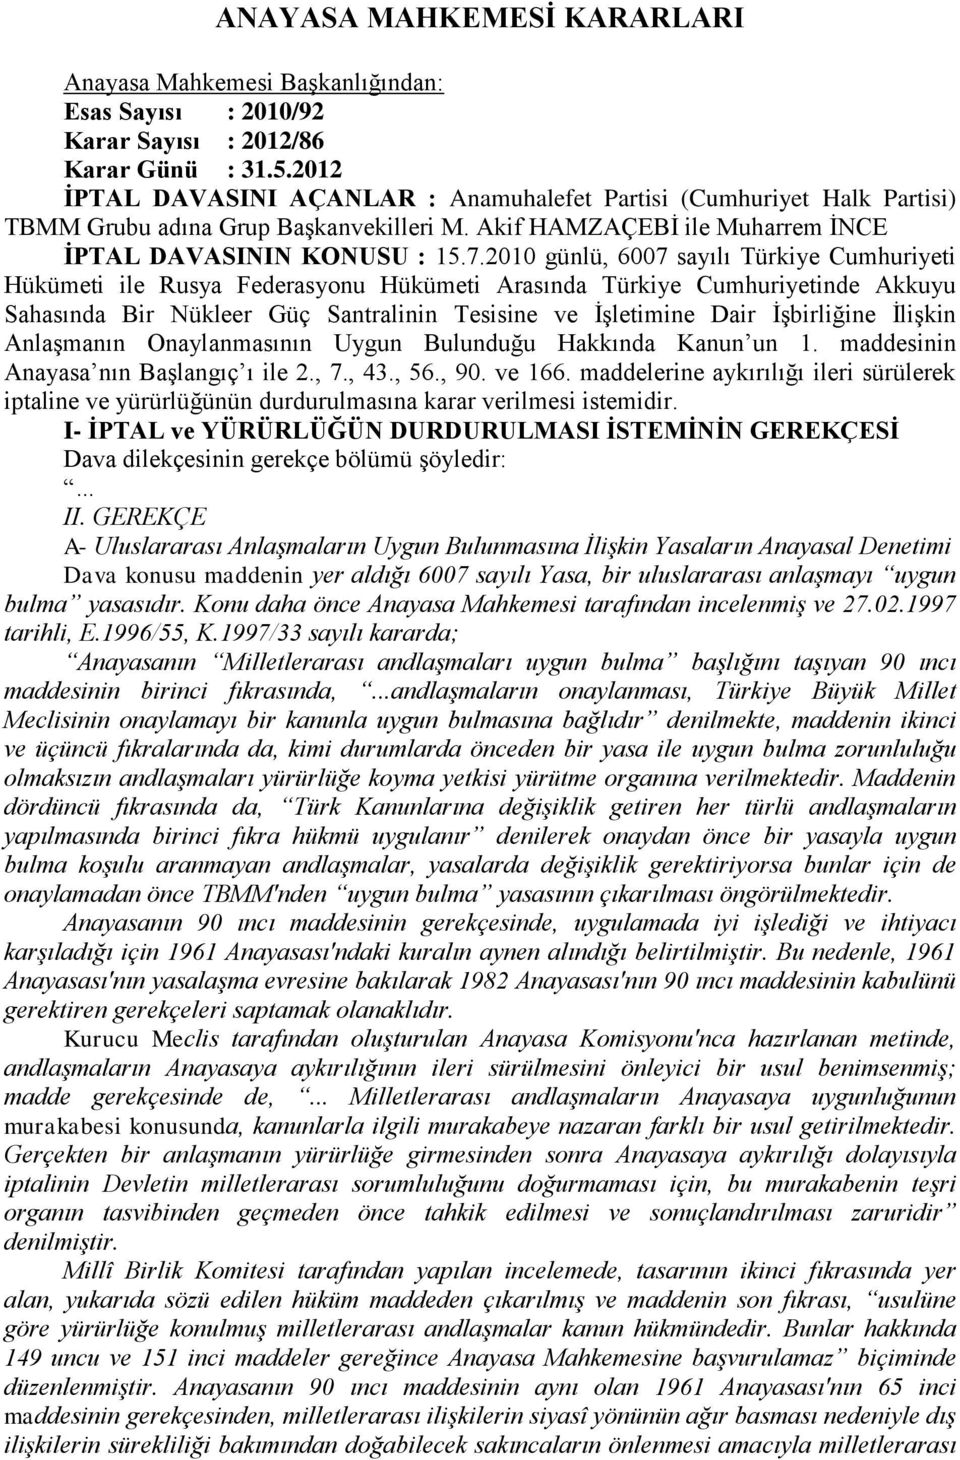 2010 günlü, 6007 sayılı Türkiye Cumhuriyeti Hükümeti ile Rusya Federasyonu Hükümeti Arasında Türkiye Cumhuriyetinde Akkuyu Sahasında Bir Nükleer Güç Santralinin Tesisine ve ĠĢletimine Dair